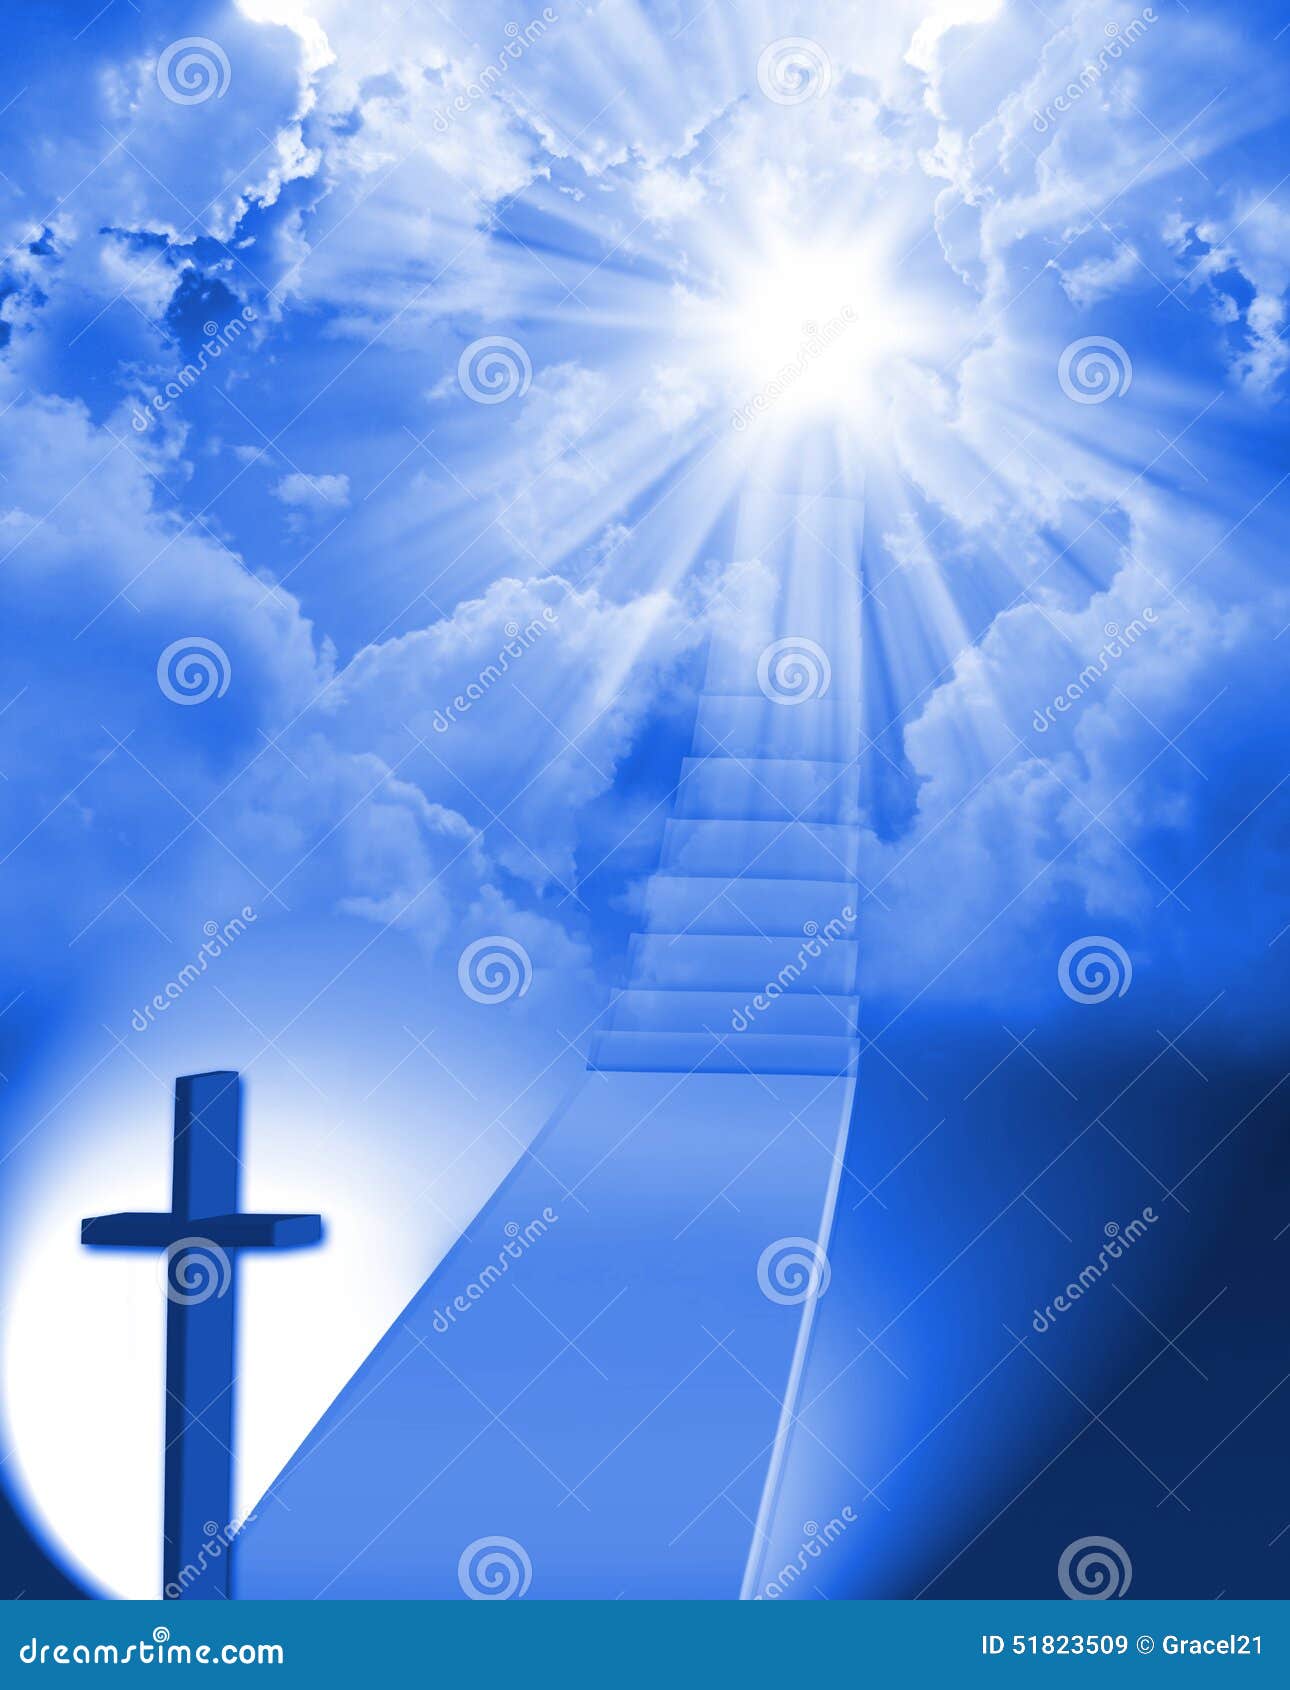 基督徒十字架在天堂 库存图片. 图片 包括有 天堂, 设计, 动态, 隐喻, 耶稣受难象, 光芒, 复活节 - 56032411